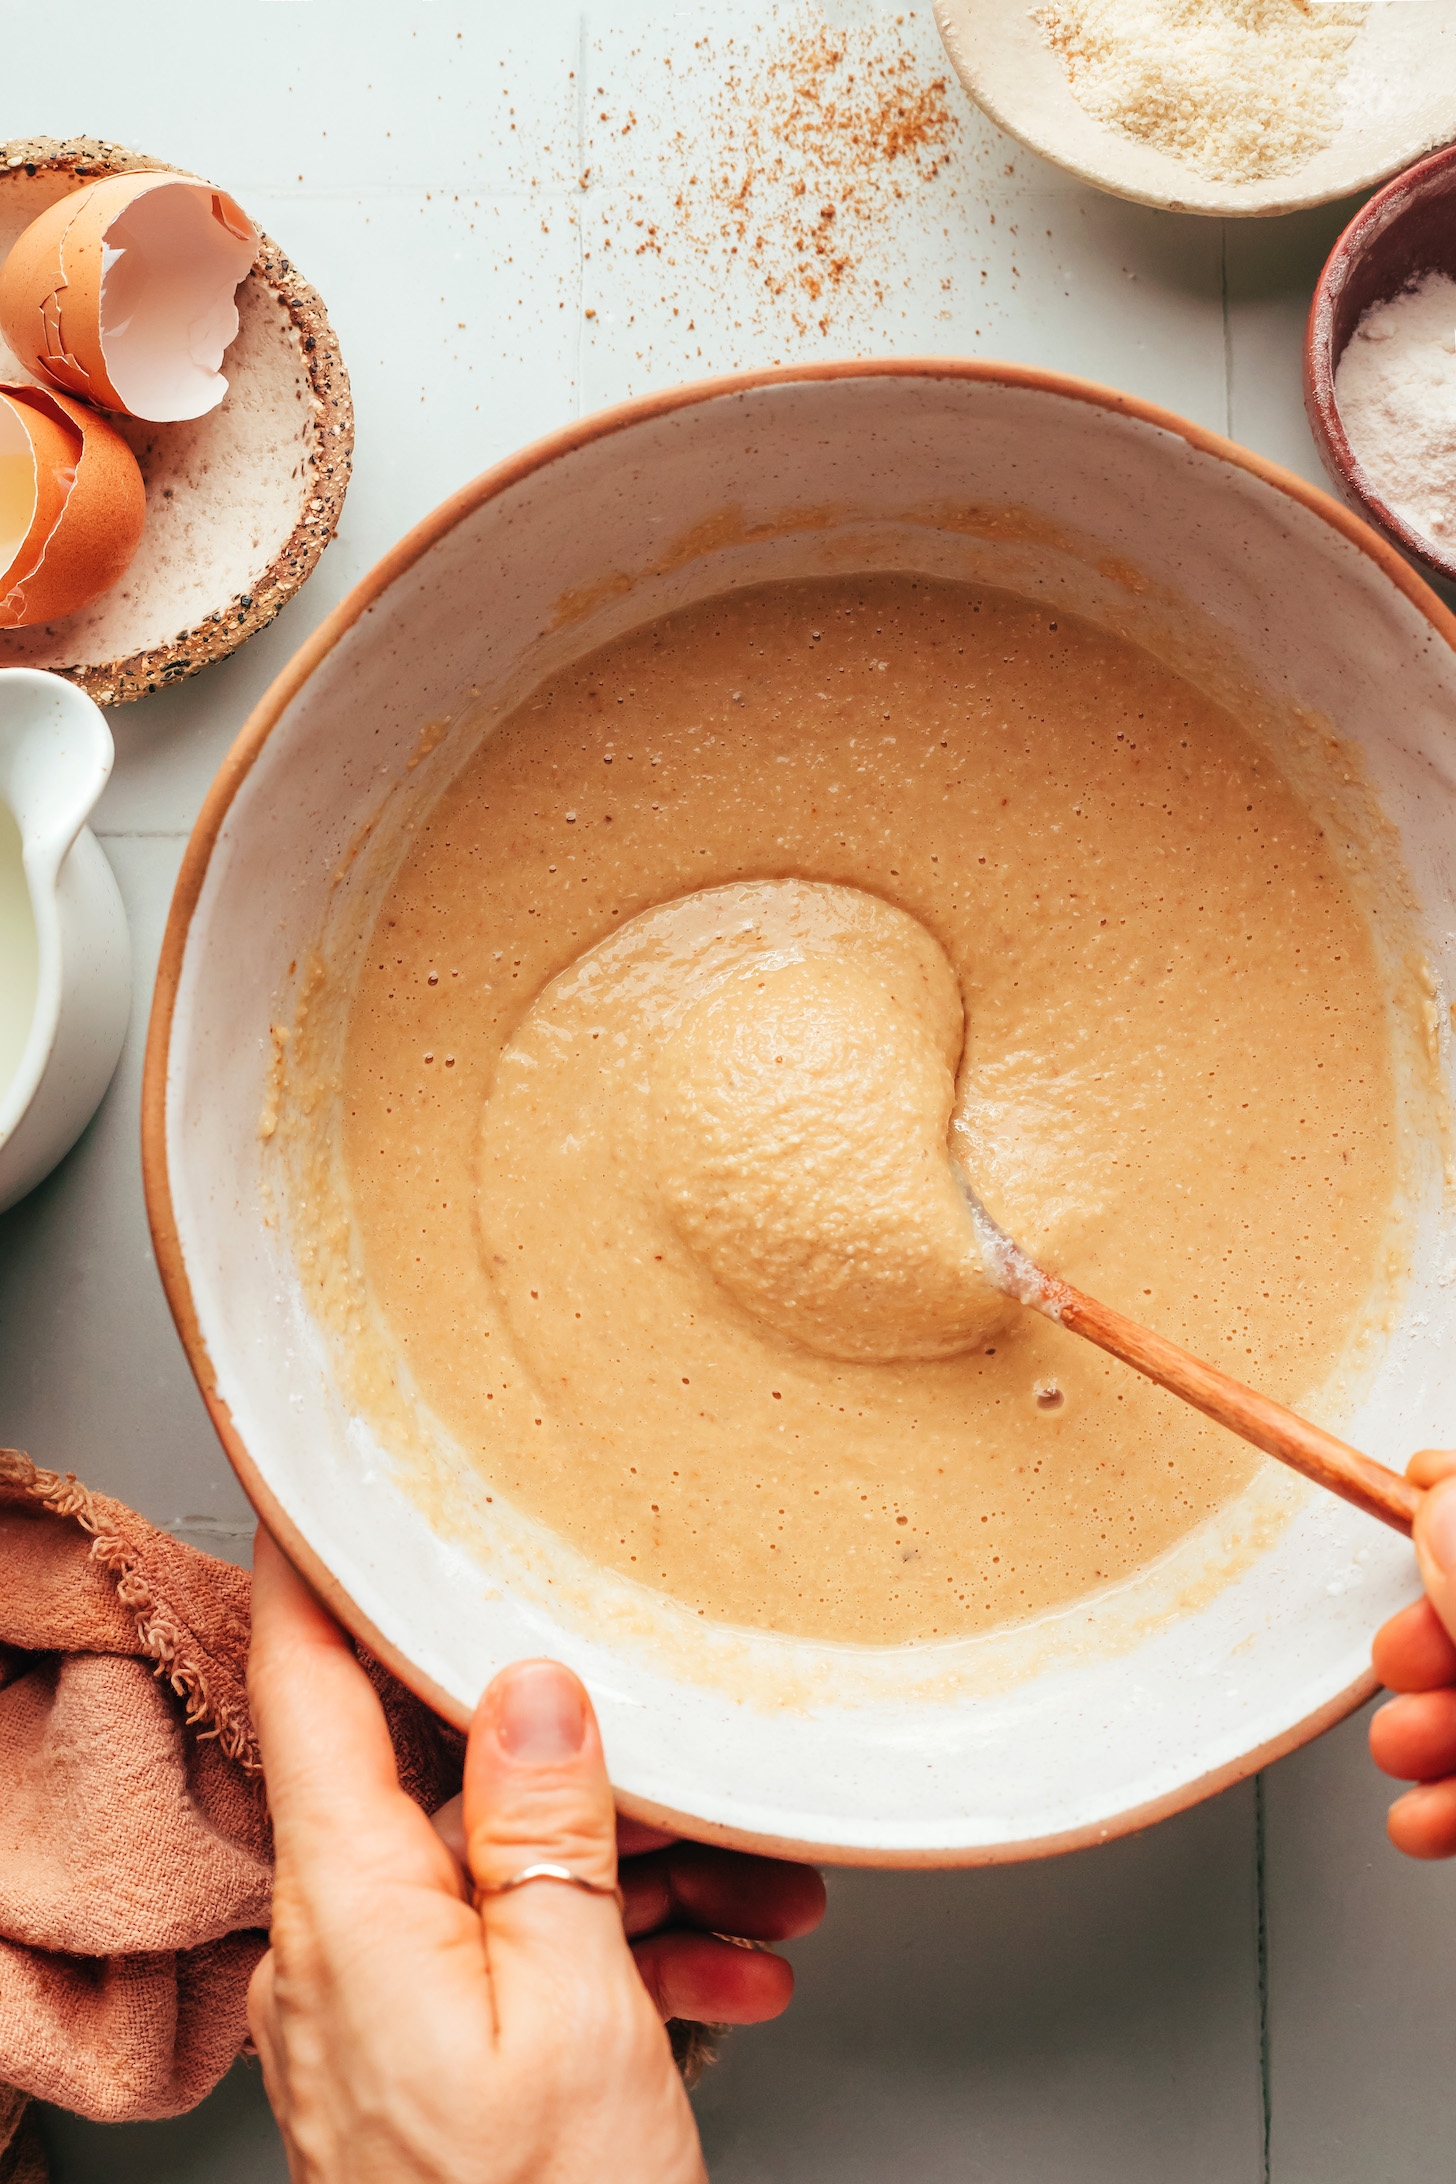 Stirring gluten-free pancake batter